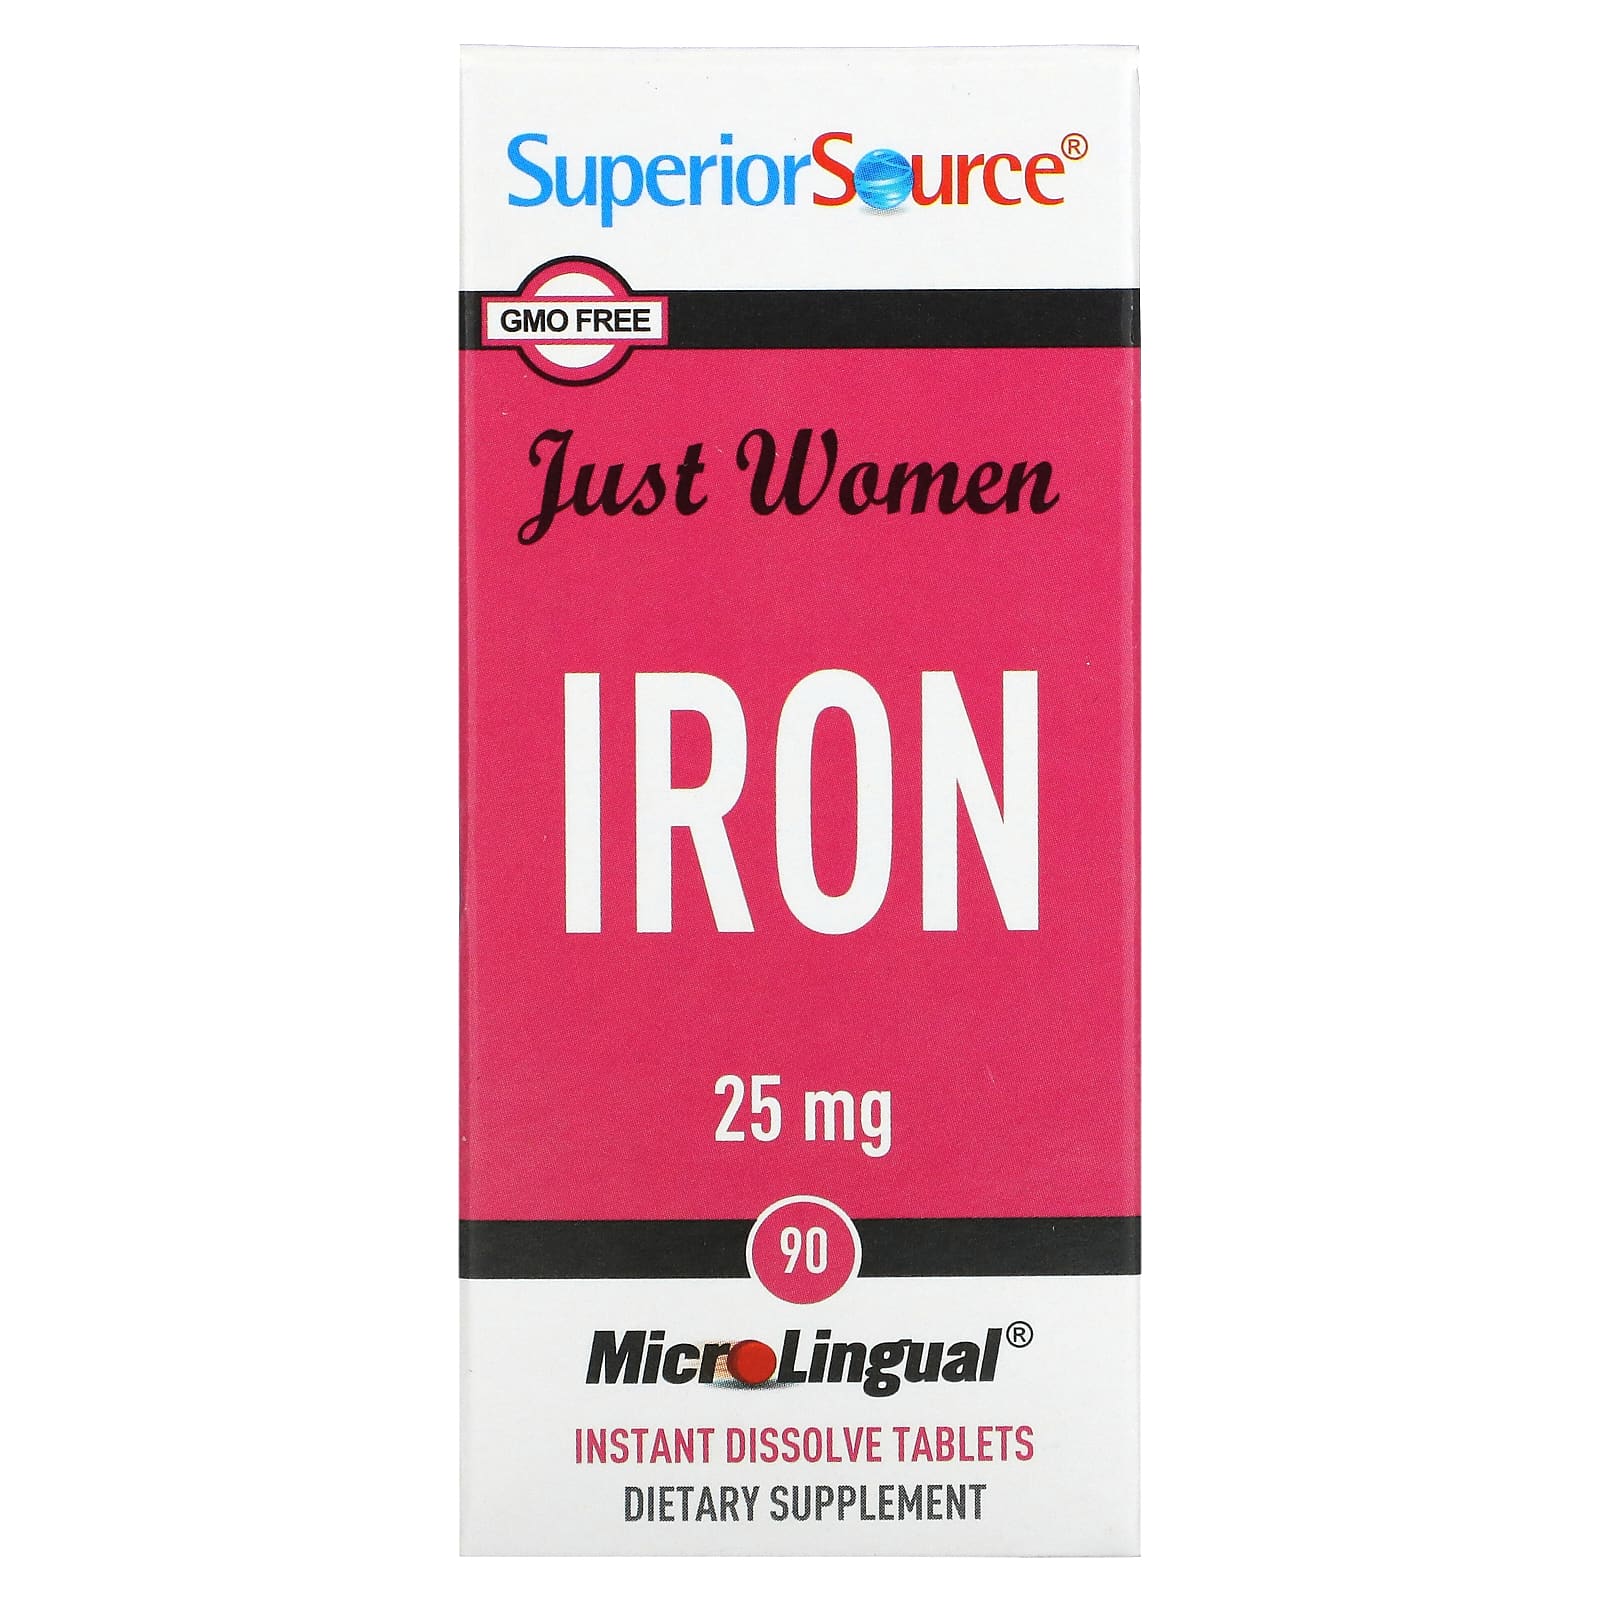 Superior Source Just Women железо 25 мг 90 микролингвальных быстрорастворимых таблеток superior source мелатонин 5 мг 60 быстрорастворимых микролингвальных таблеток